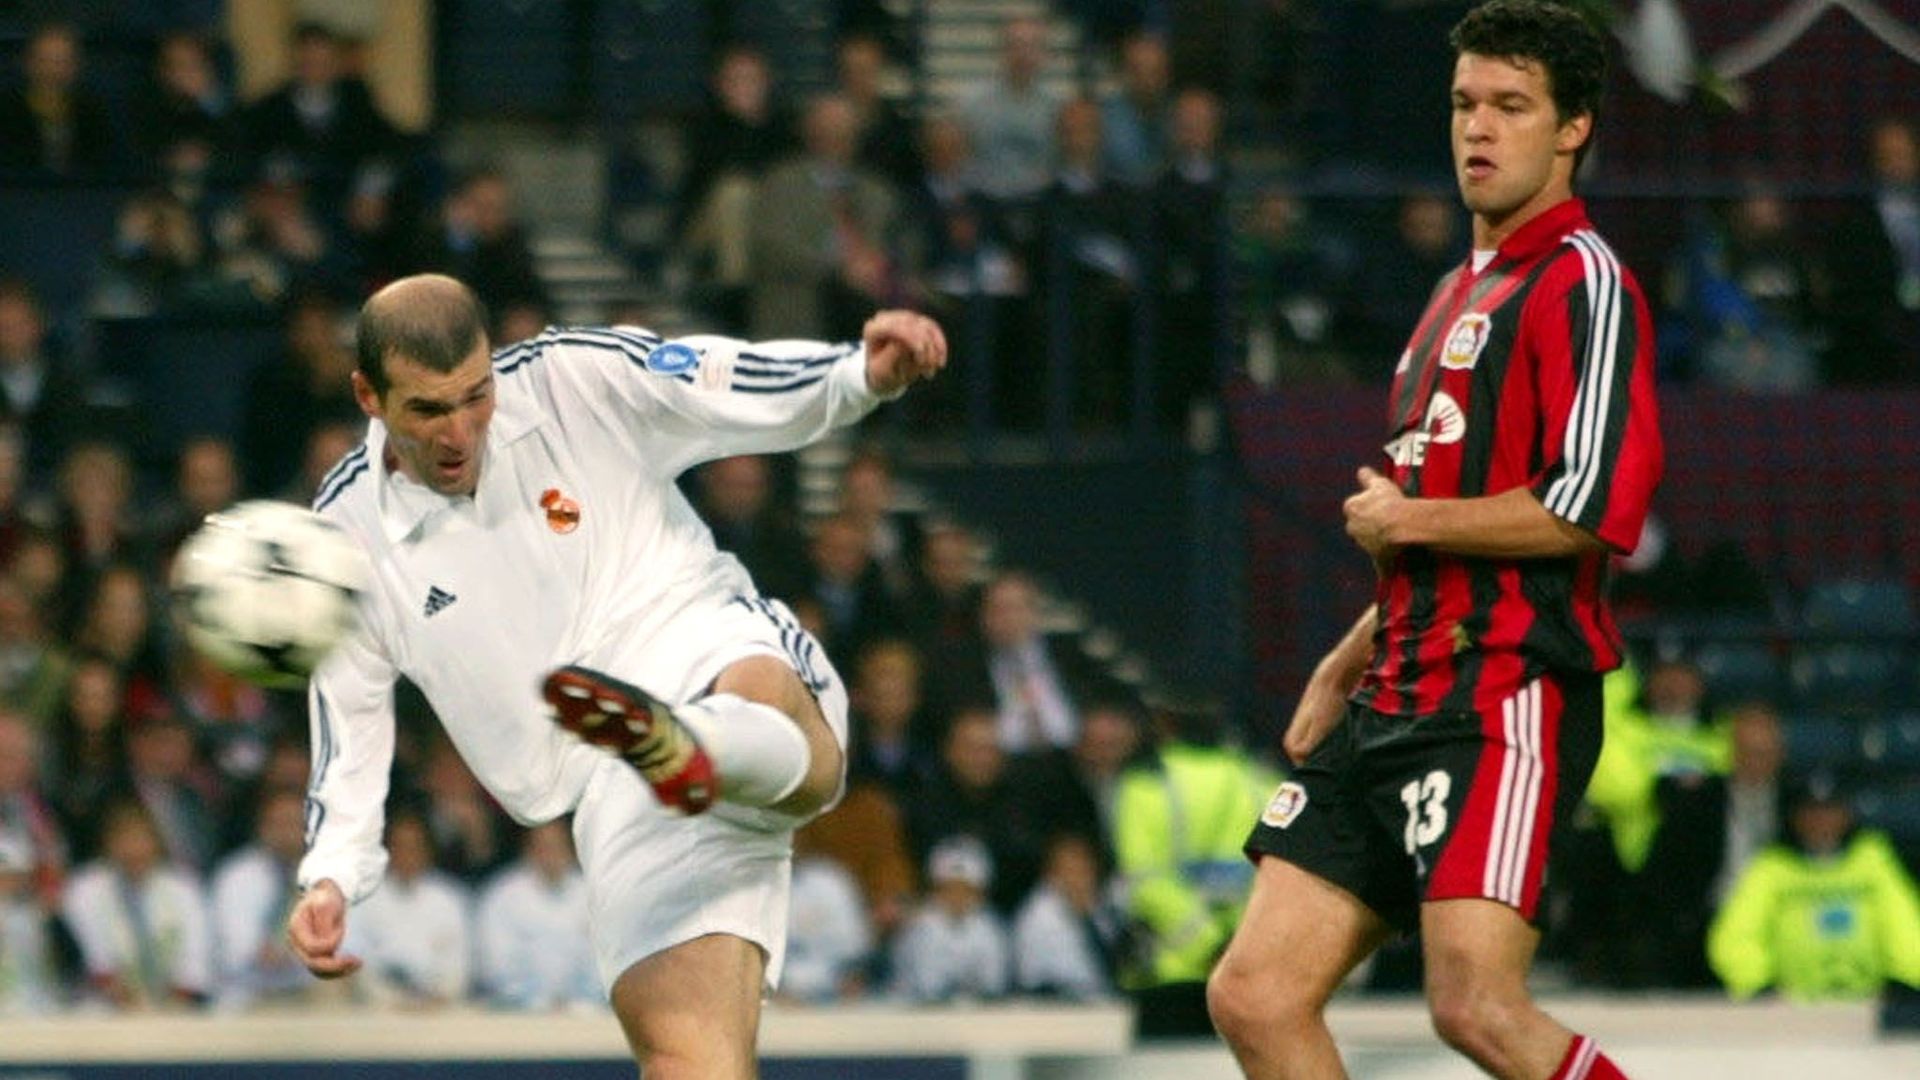 Zidane en finale de Ligue des Champions en 2002 avec le Real Madrid.